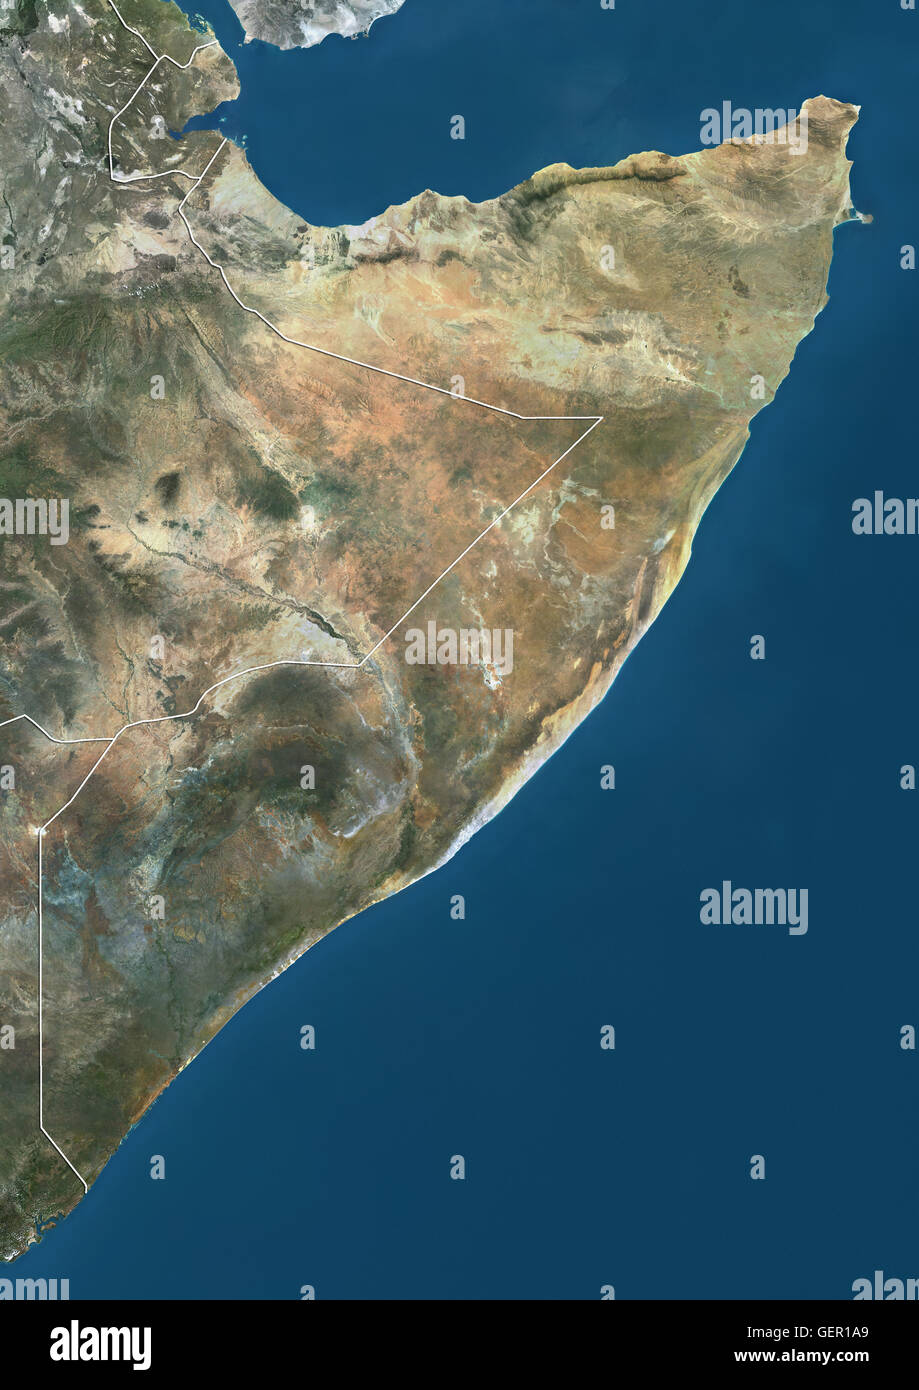 Satellitenansicht von Somalia (mit Ländergrenzen). Dieses Bild wurde aus Daten von Landsat-Satelliten erworben erstellt. Stockfoto